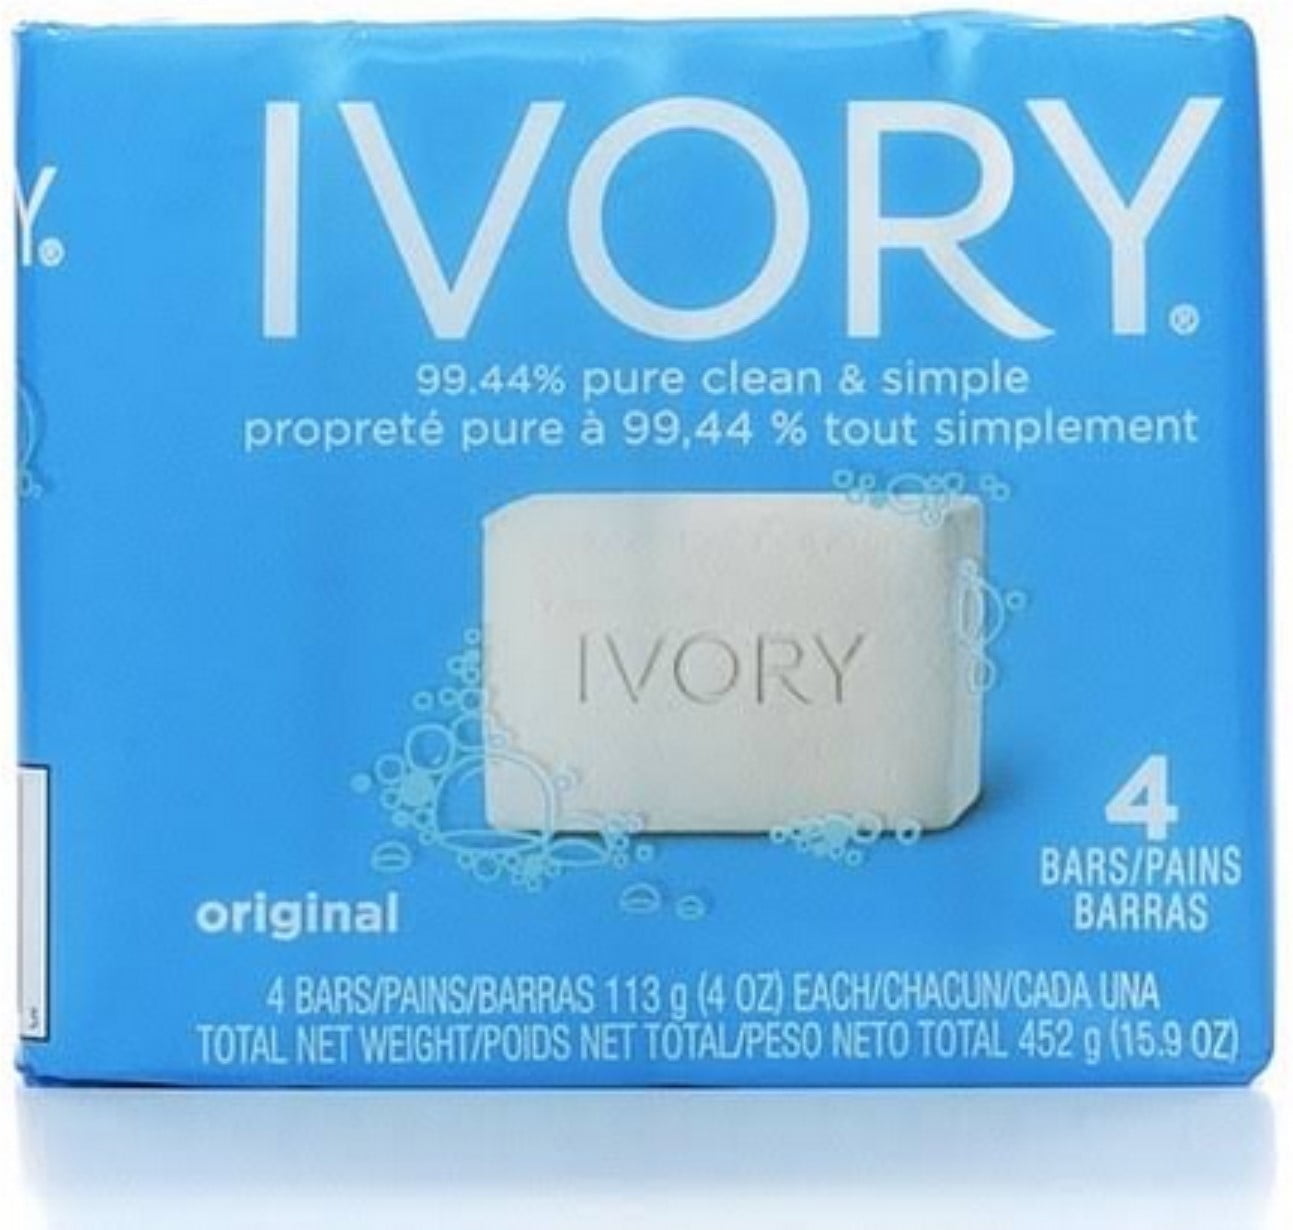 Ivory Bar Soap, Original 4 oz, 4 bars (Pack of 6) - Walmart.com ...